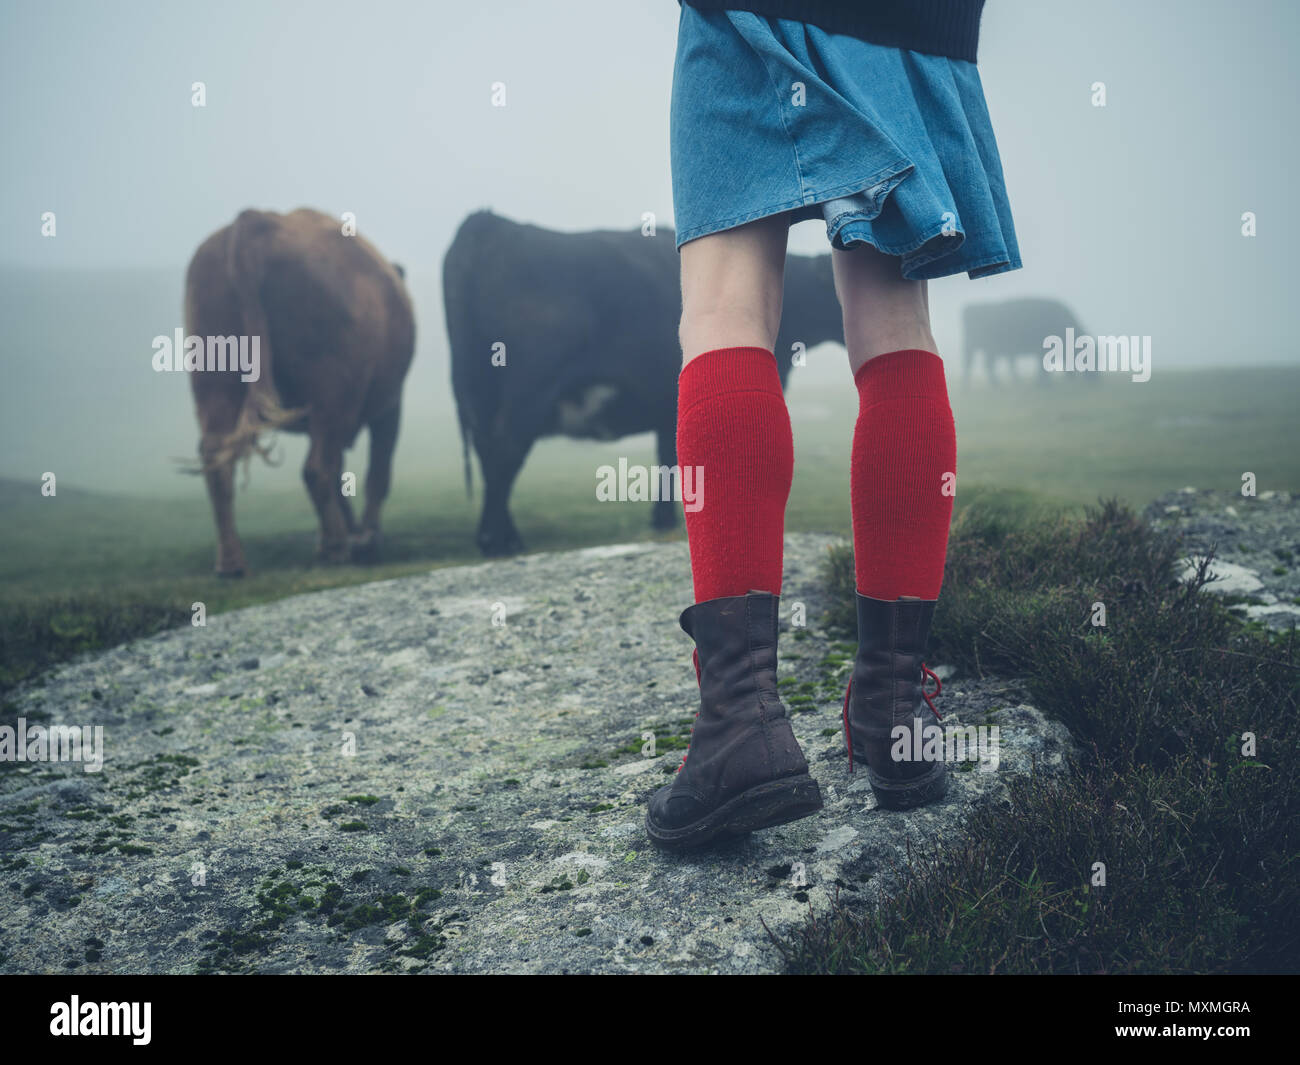 Una joven mujer vistiendo calcetines rojos y botas de trekking está  caminando en el páramo en la niebla cerca de algunas vacas Fotografía de  stock - Alamy